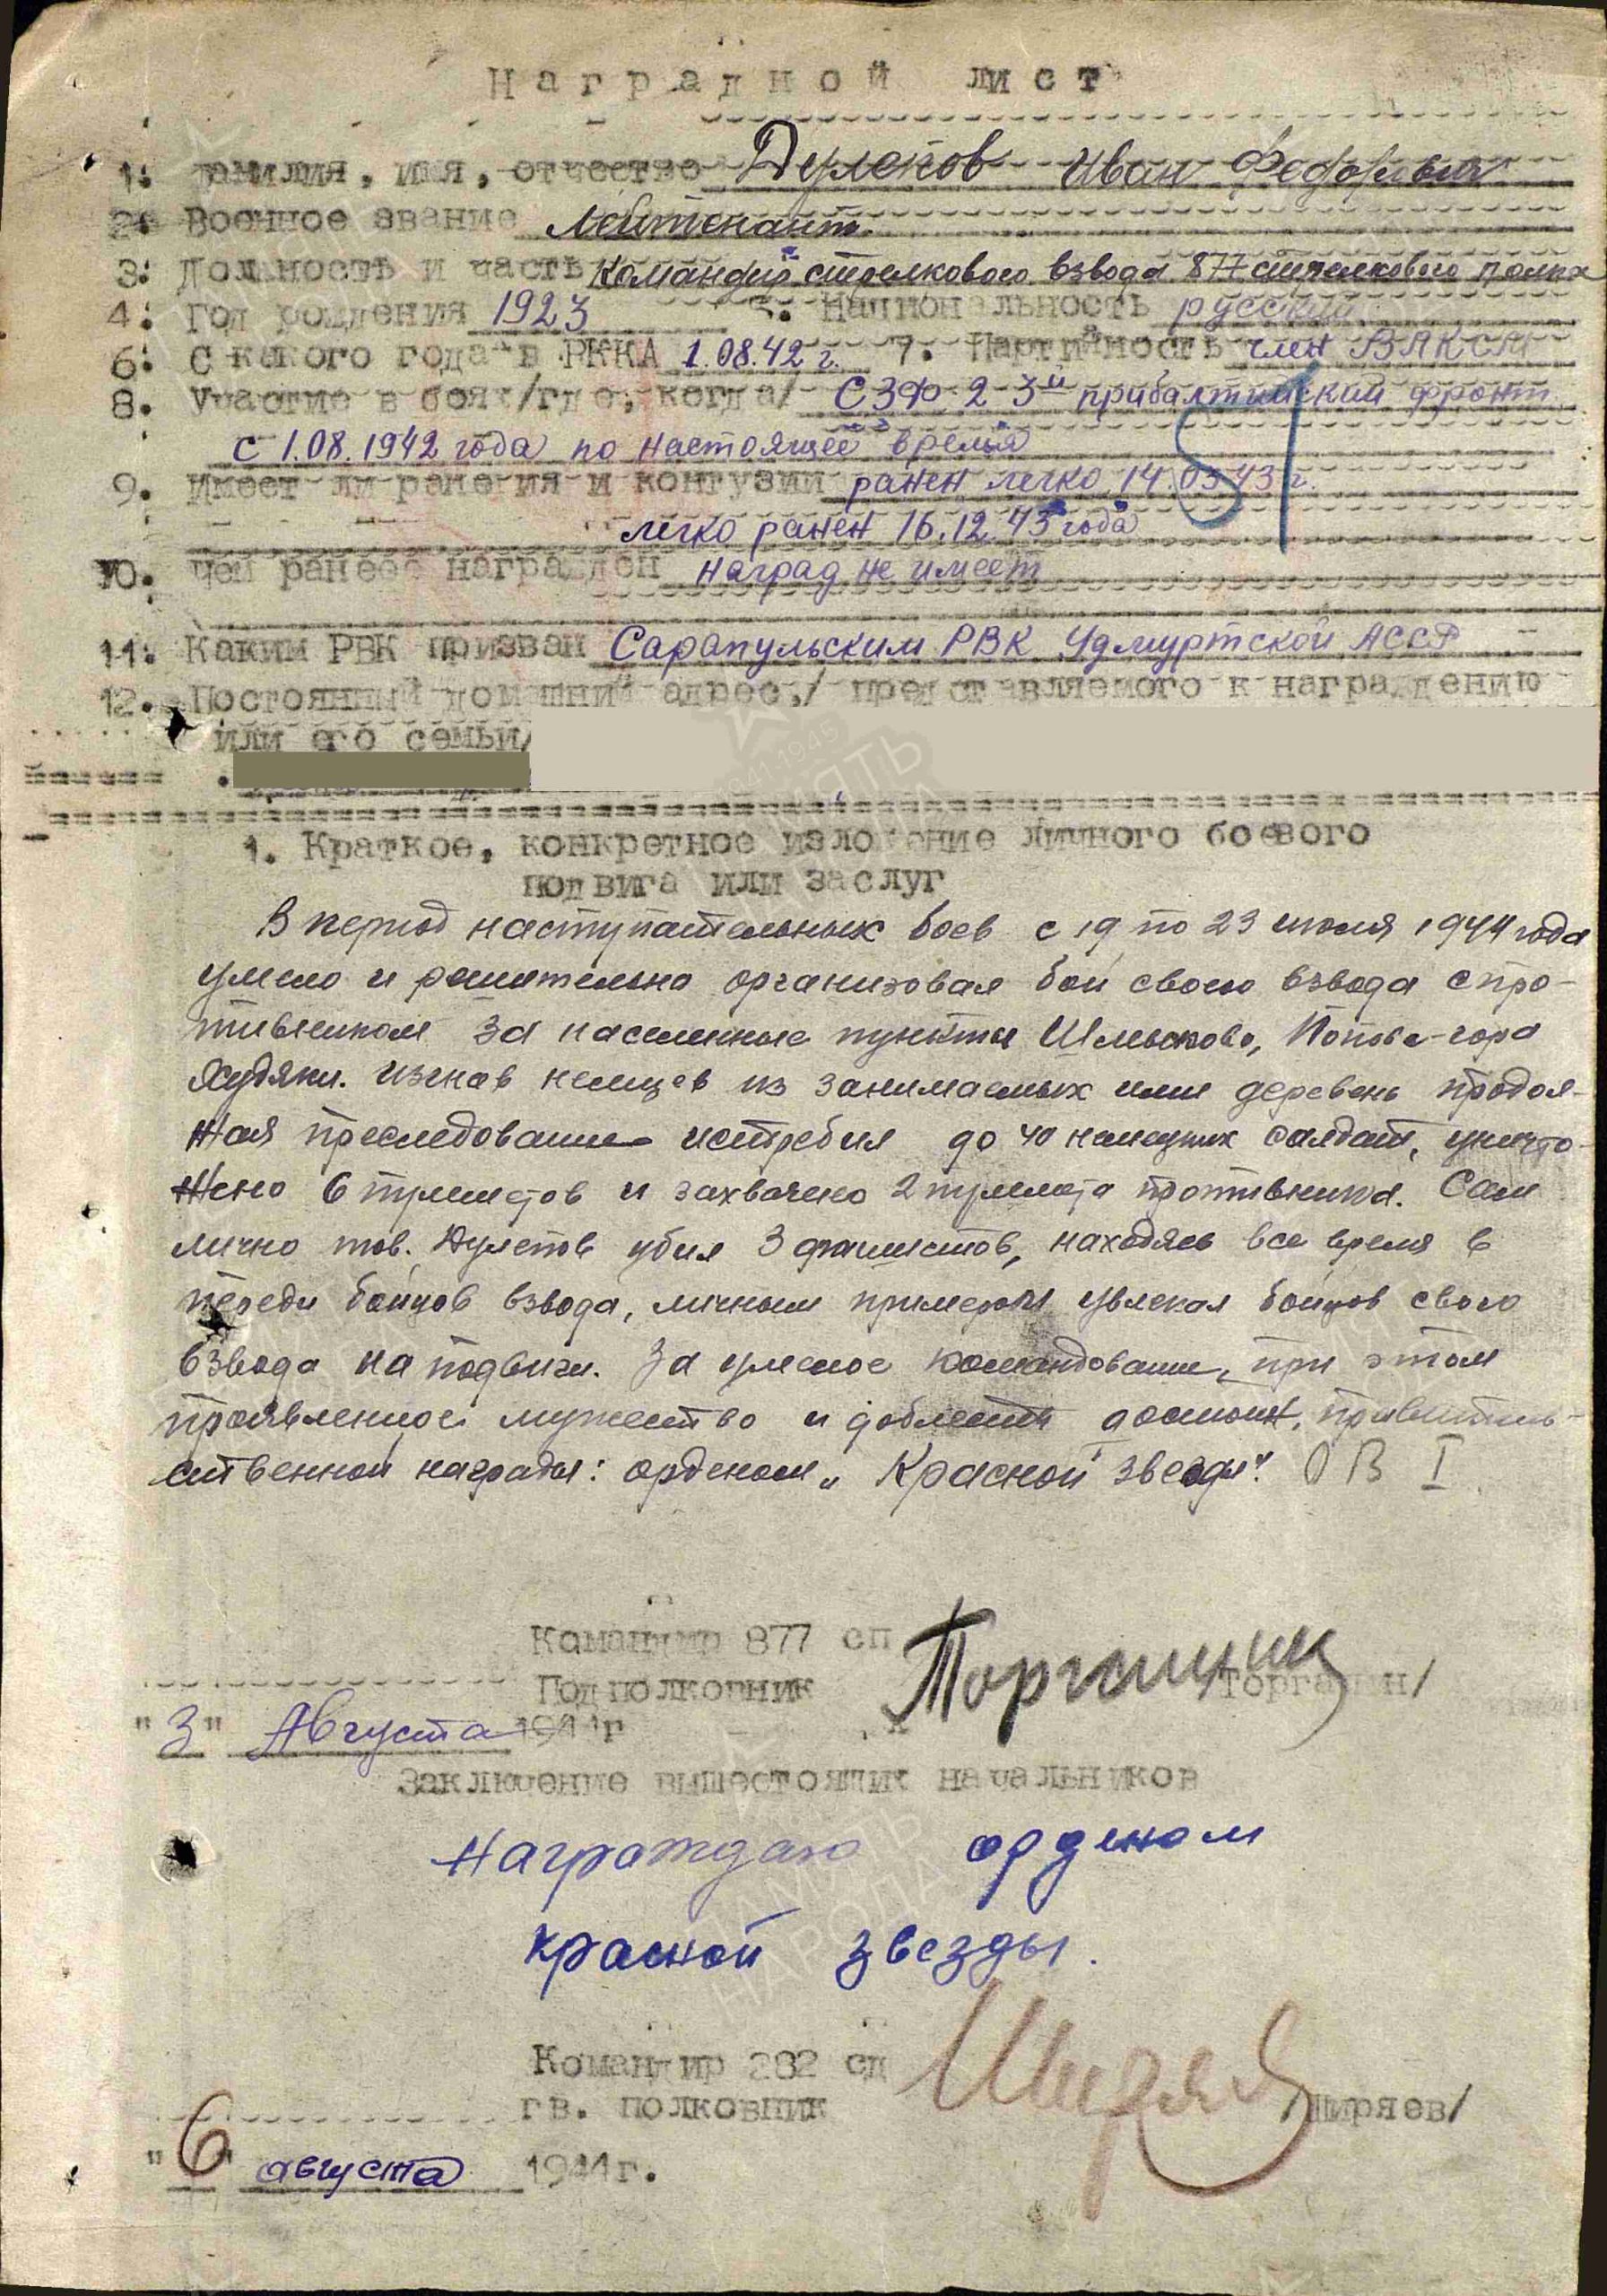 Наградной лист. Орден Красной Звезды, 1944г.